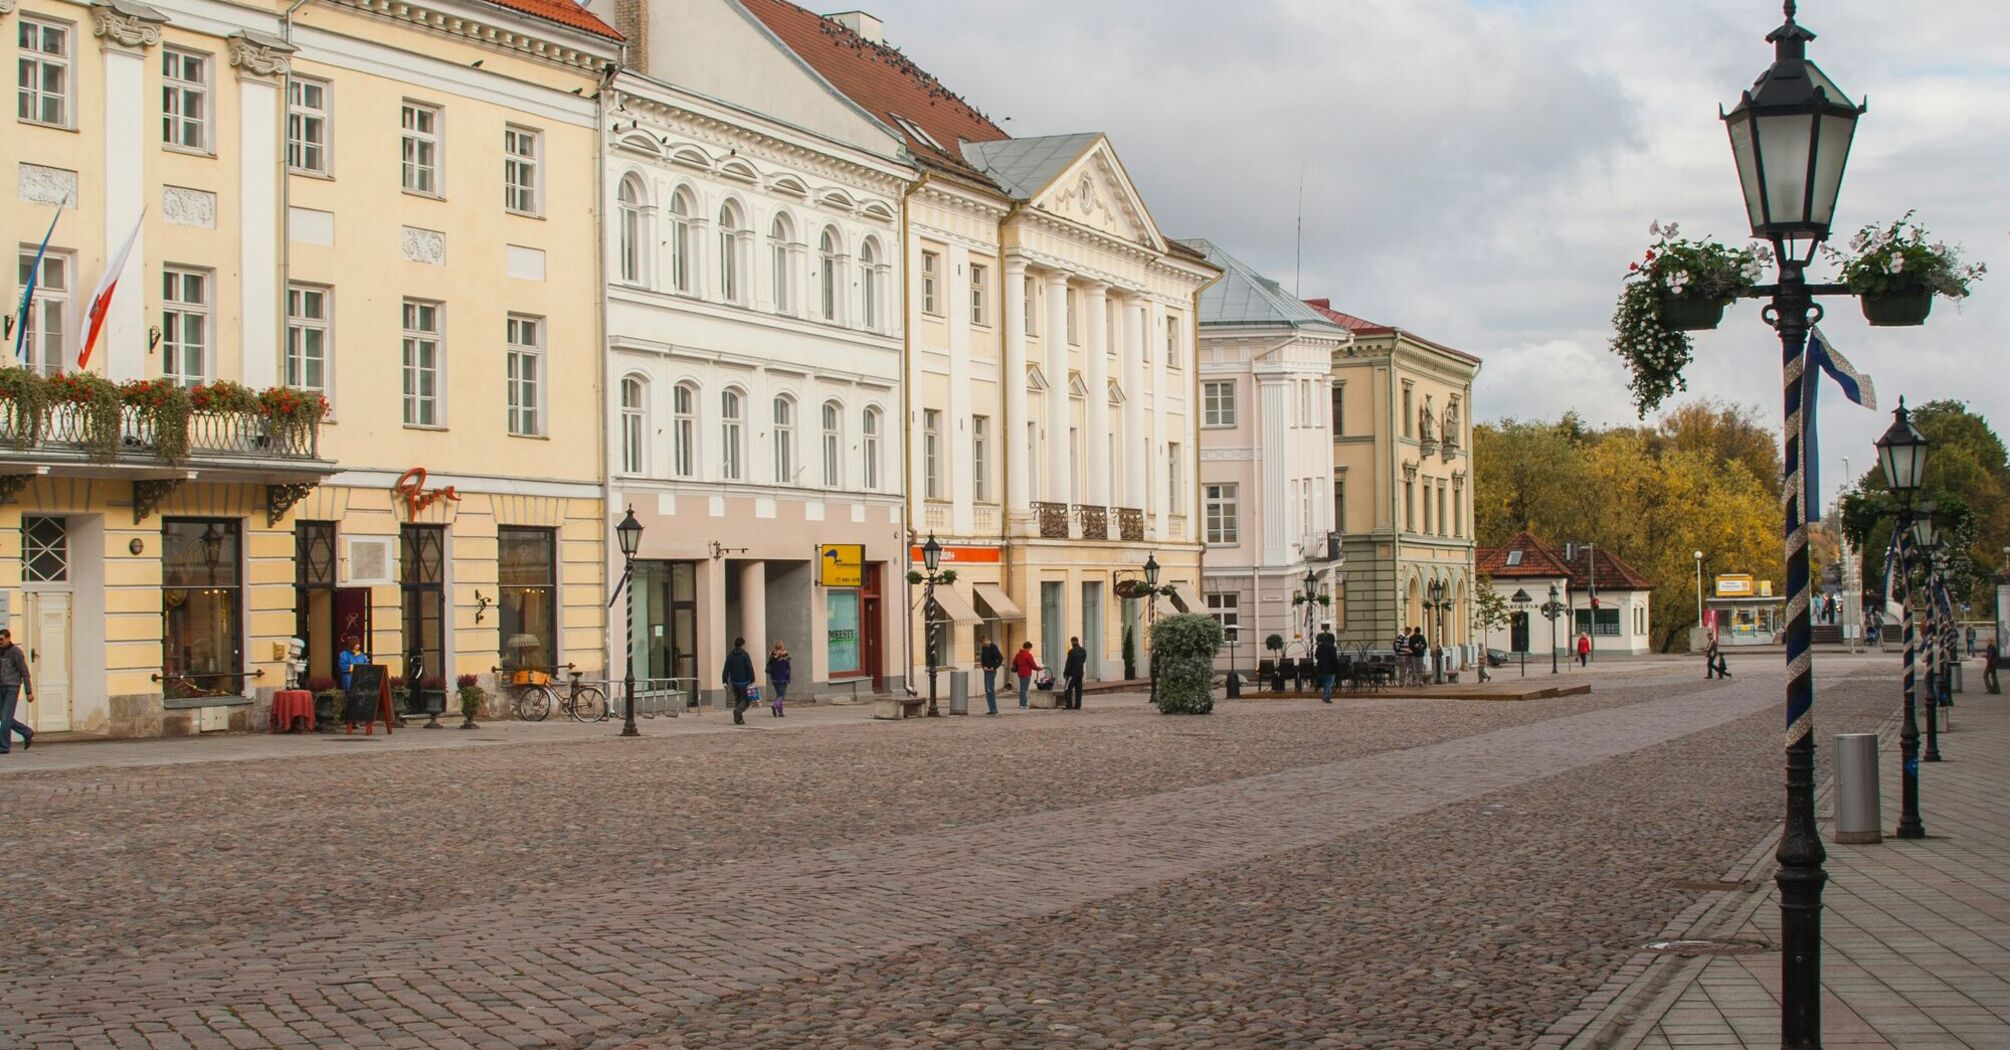 City of Tartu, Estonia.